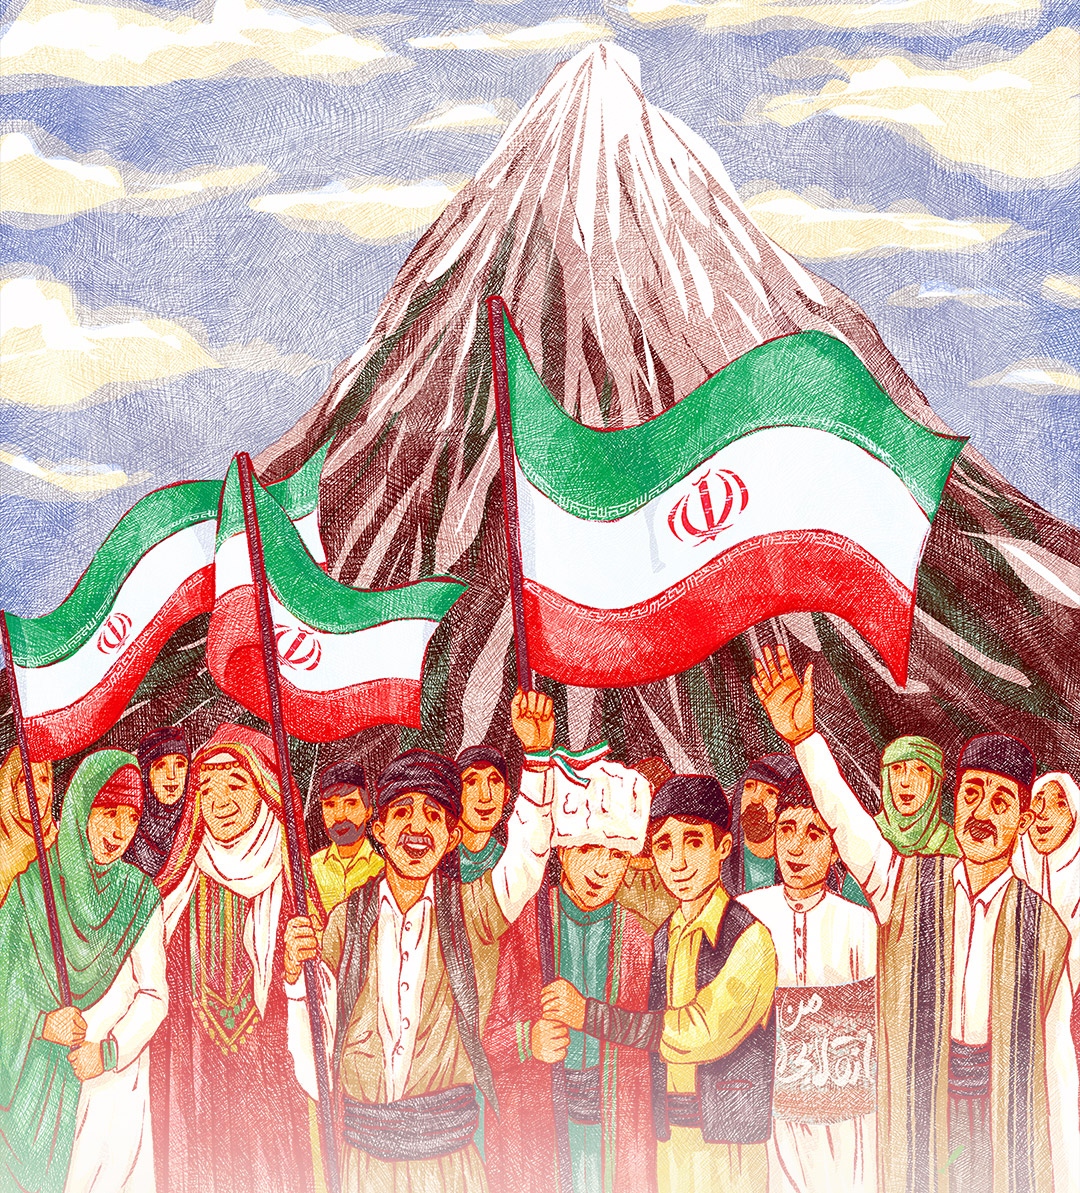 سالروز پیروزی انقلاب اسلامی ۲۲ بهمن مبارک باد 